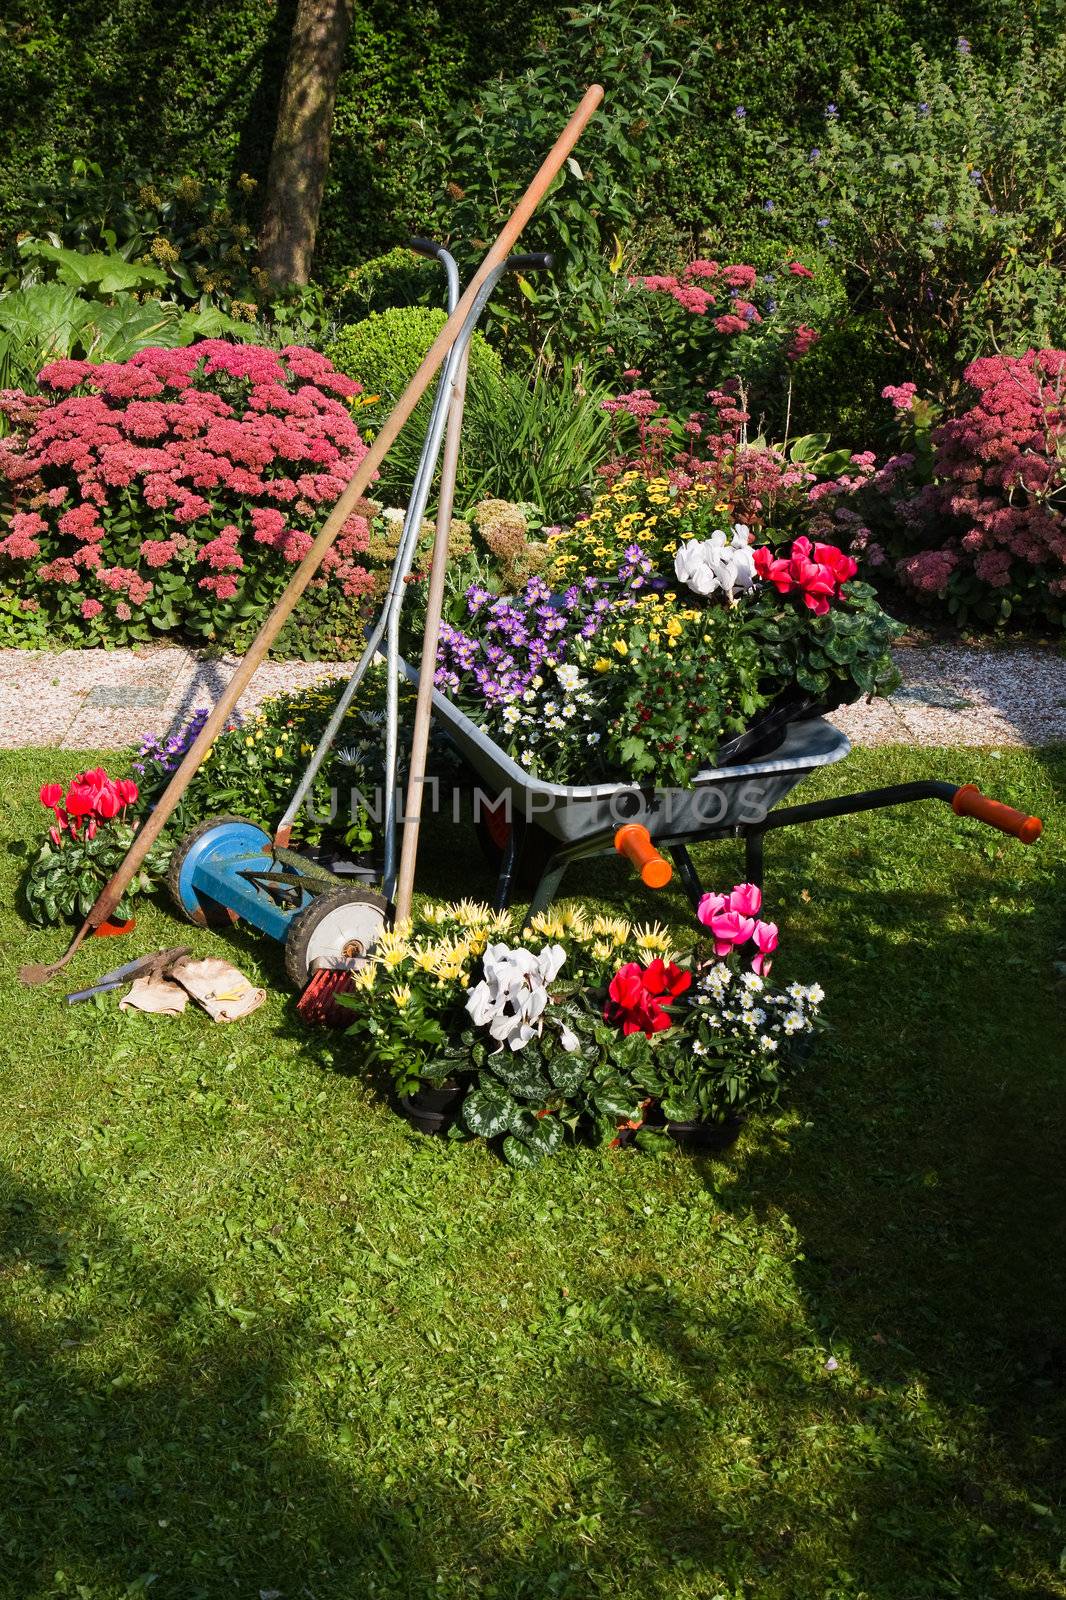 Wheelbarrow, grass mower, garden equipment by Colette